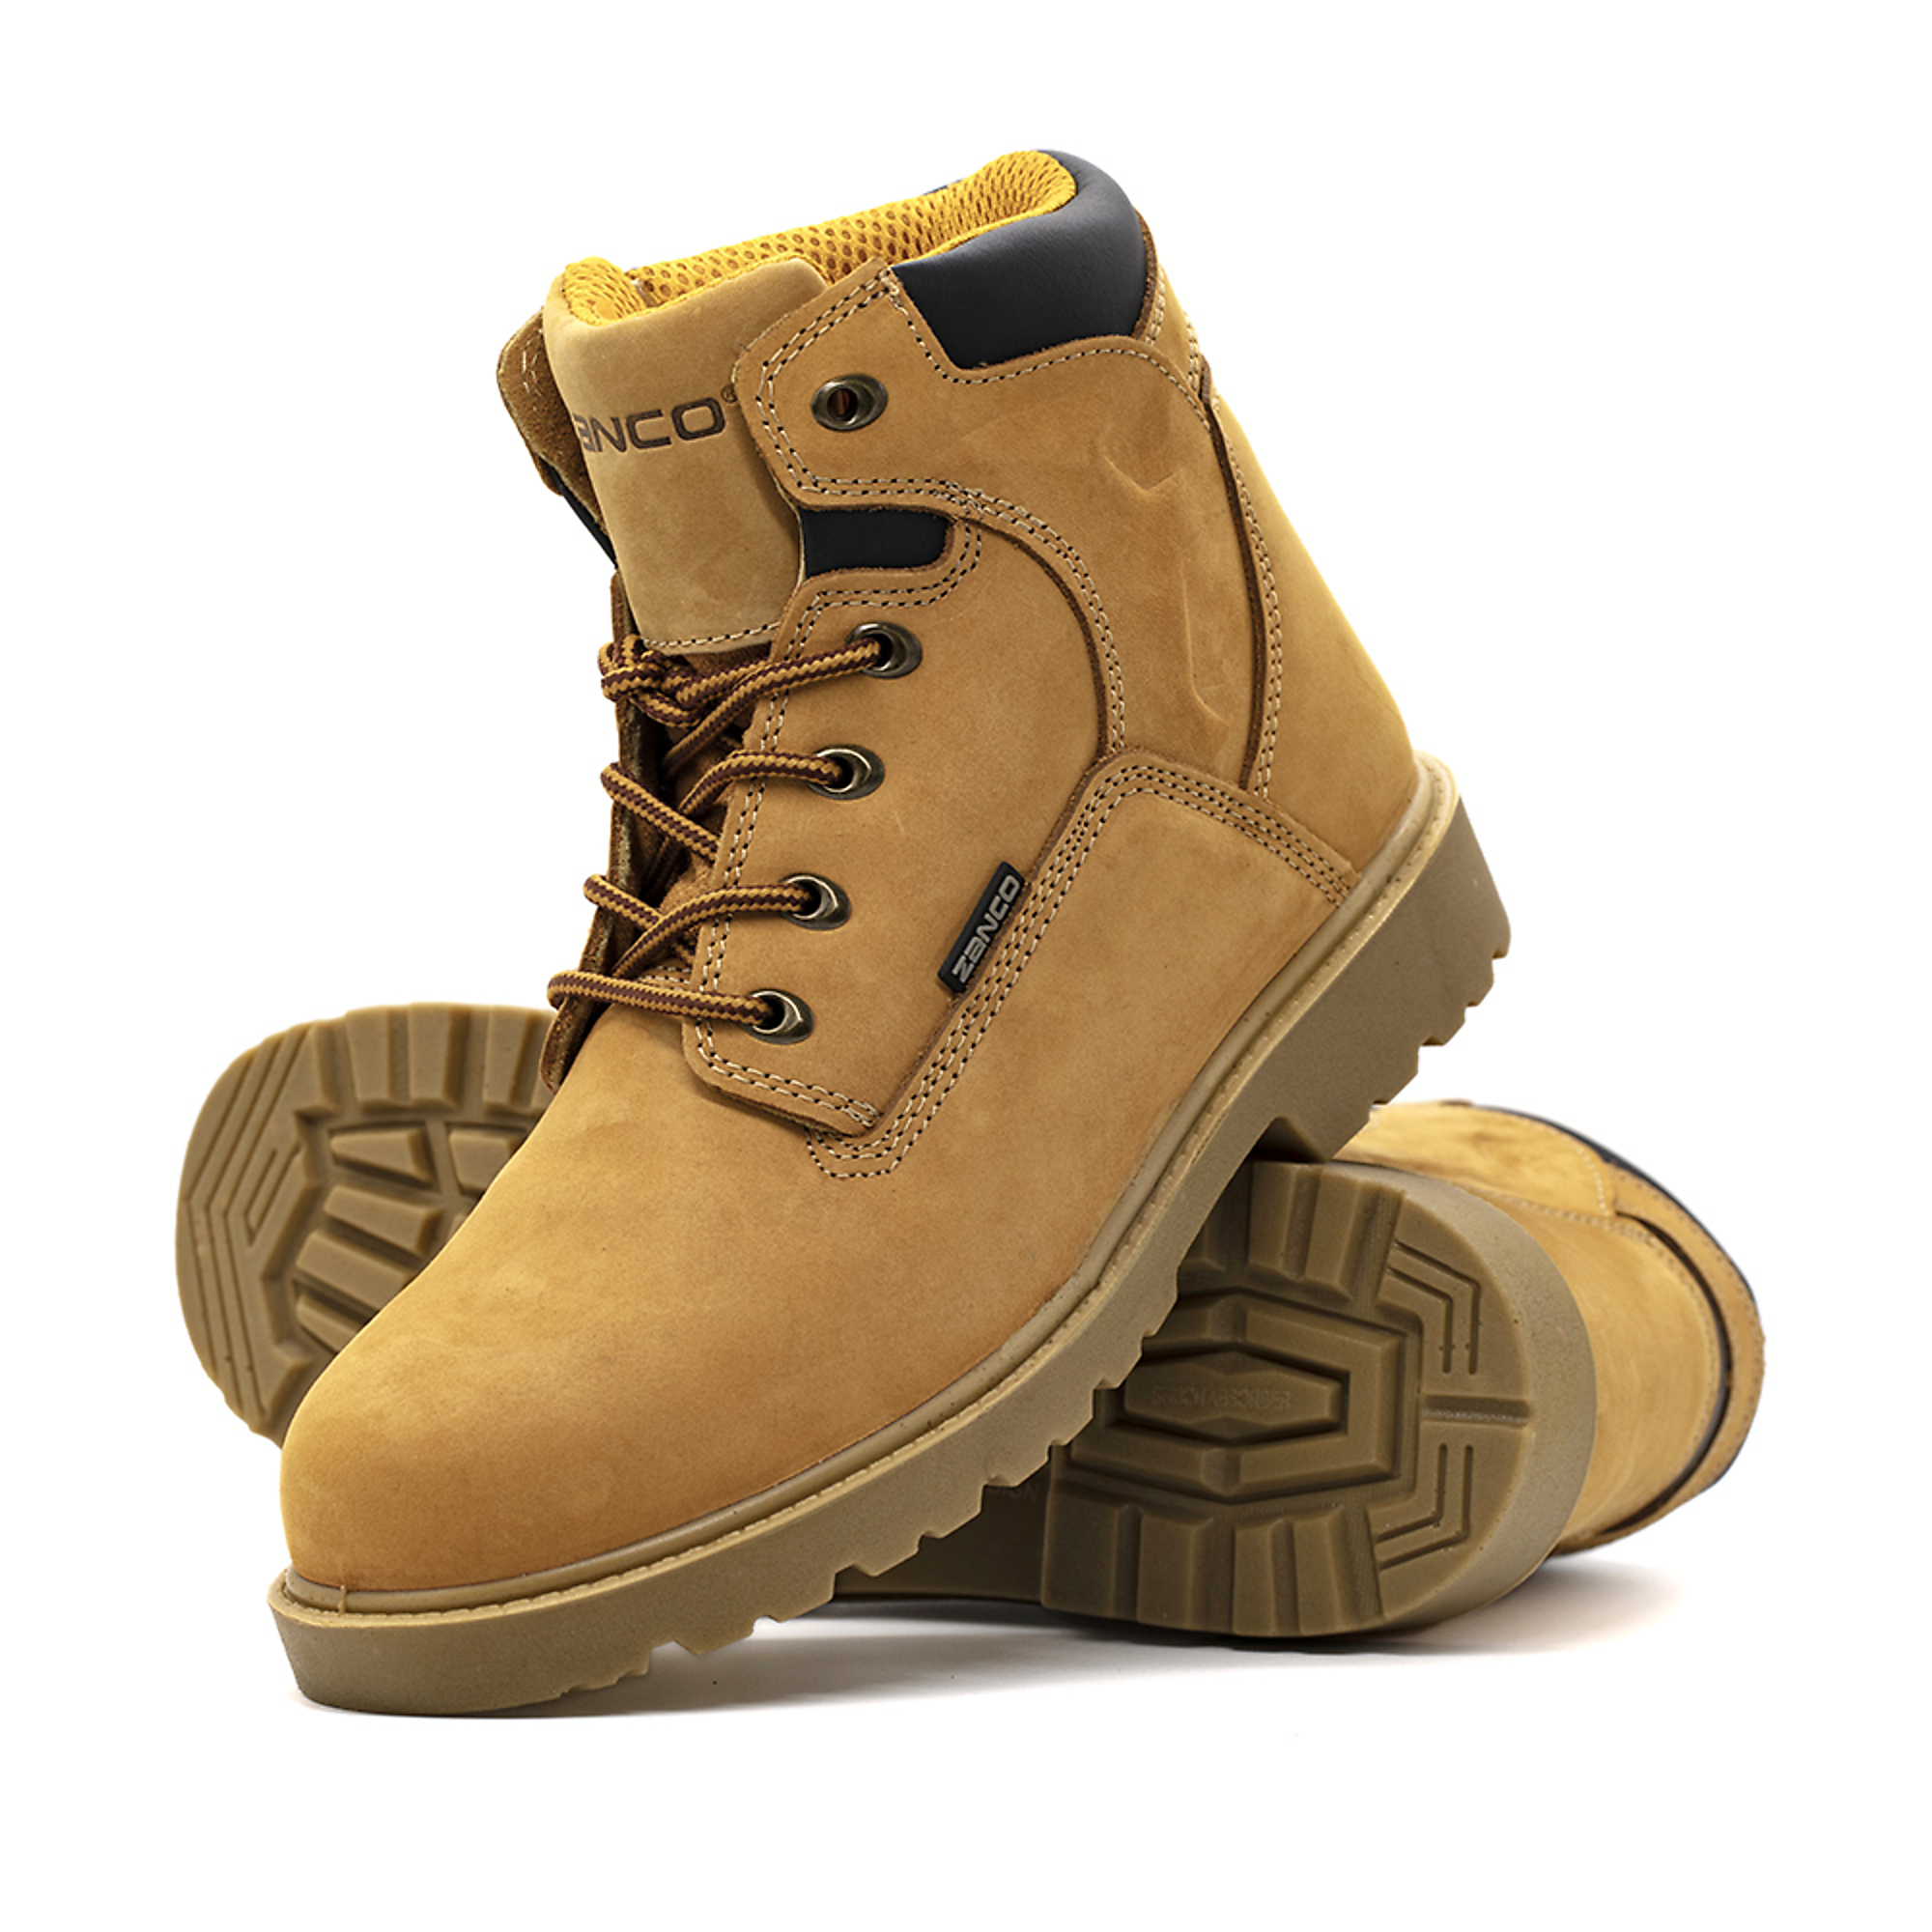 Zanco, Men's Waterproof,Steel toe,EH,Safety boots, Size 9 1/2, Width Medium, Color WHEAT, Model 7681-SE-9.5